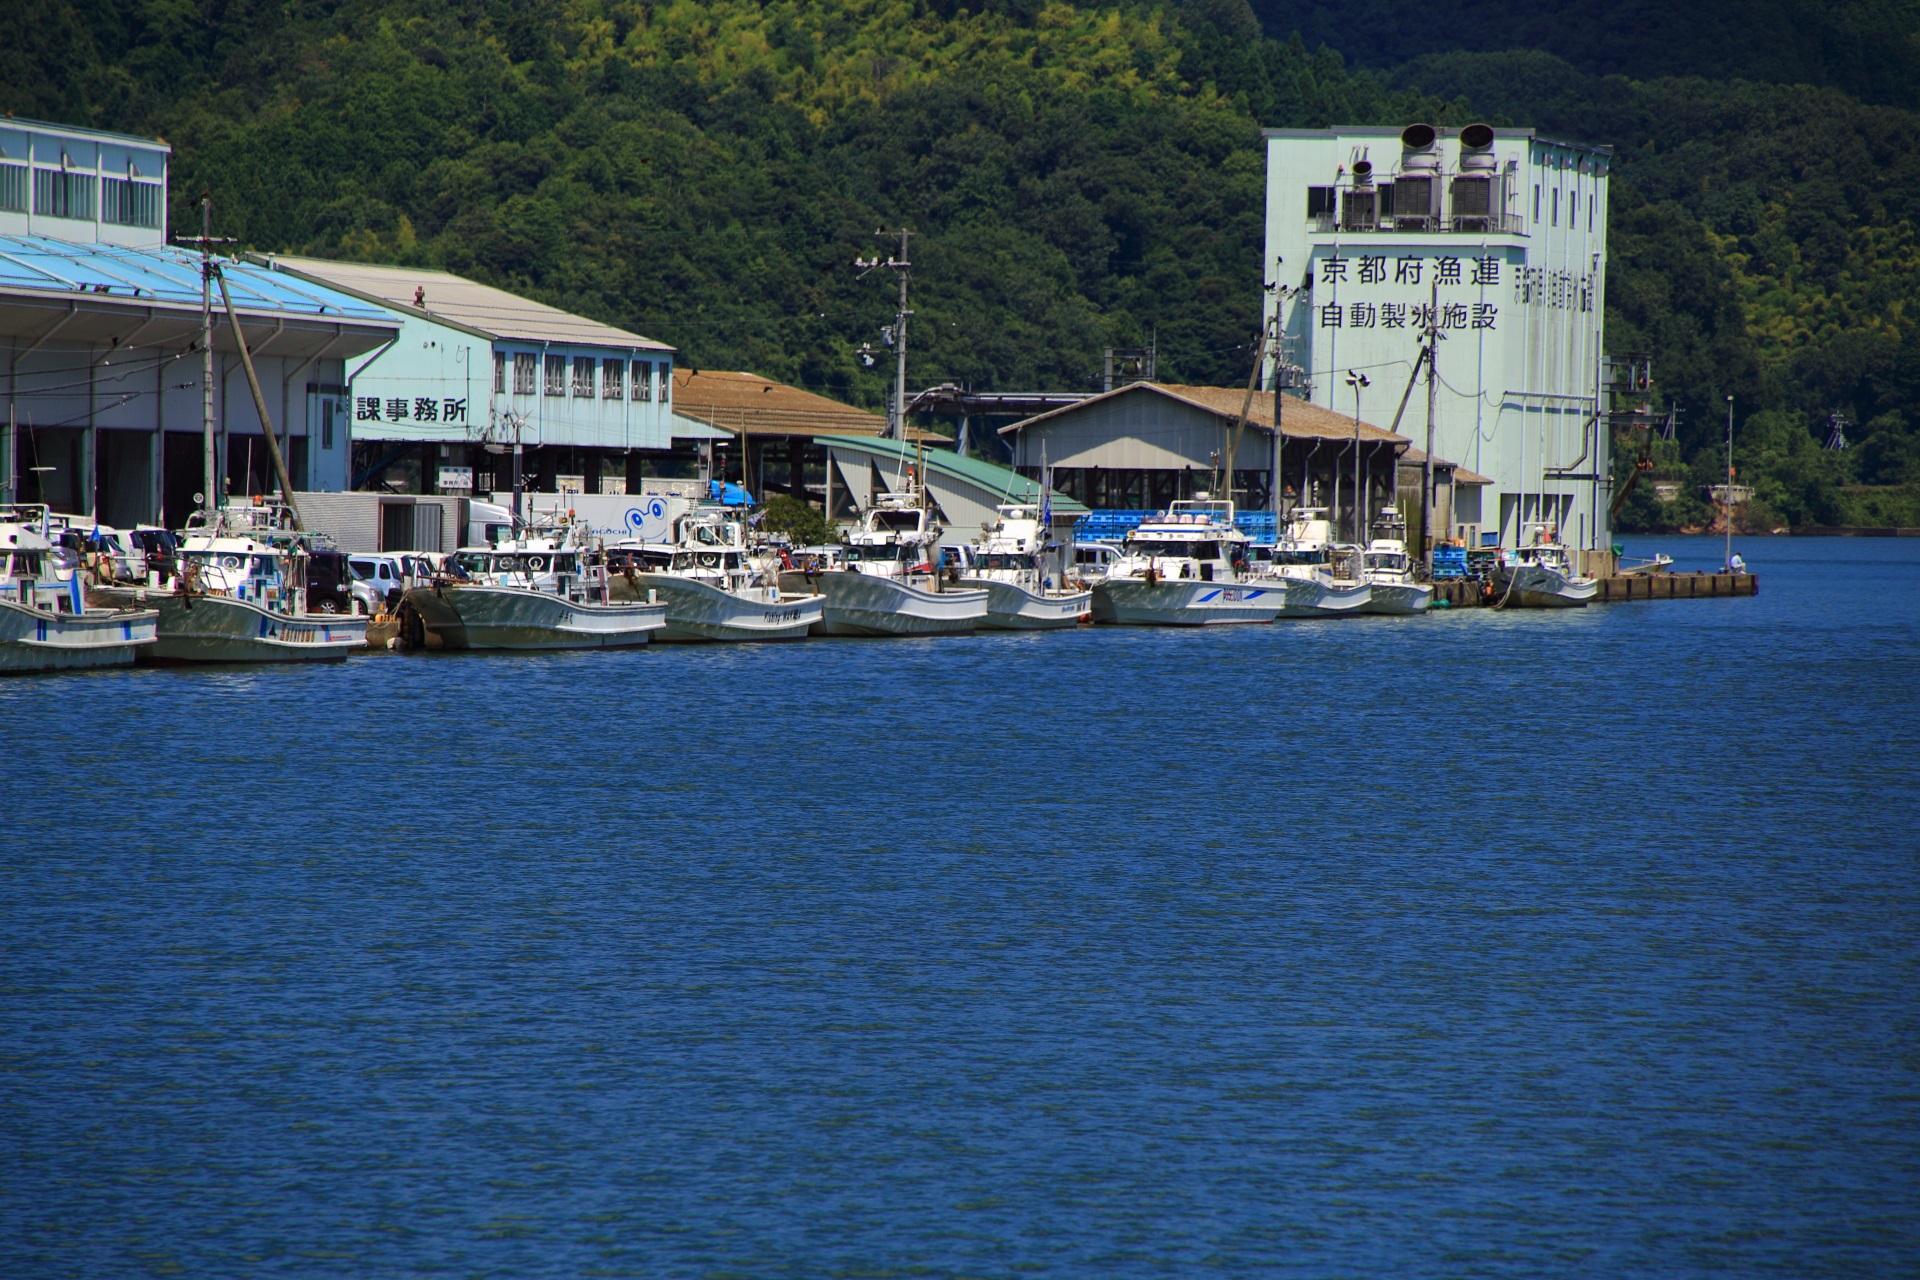 対岸にも漁船が並ぶ伊佐津川の趣きある漁港の風景